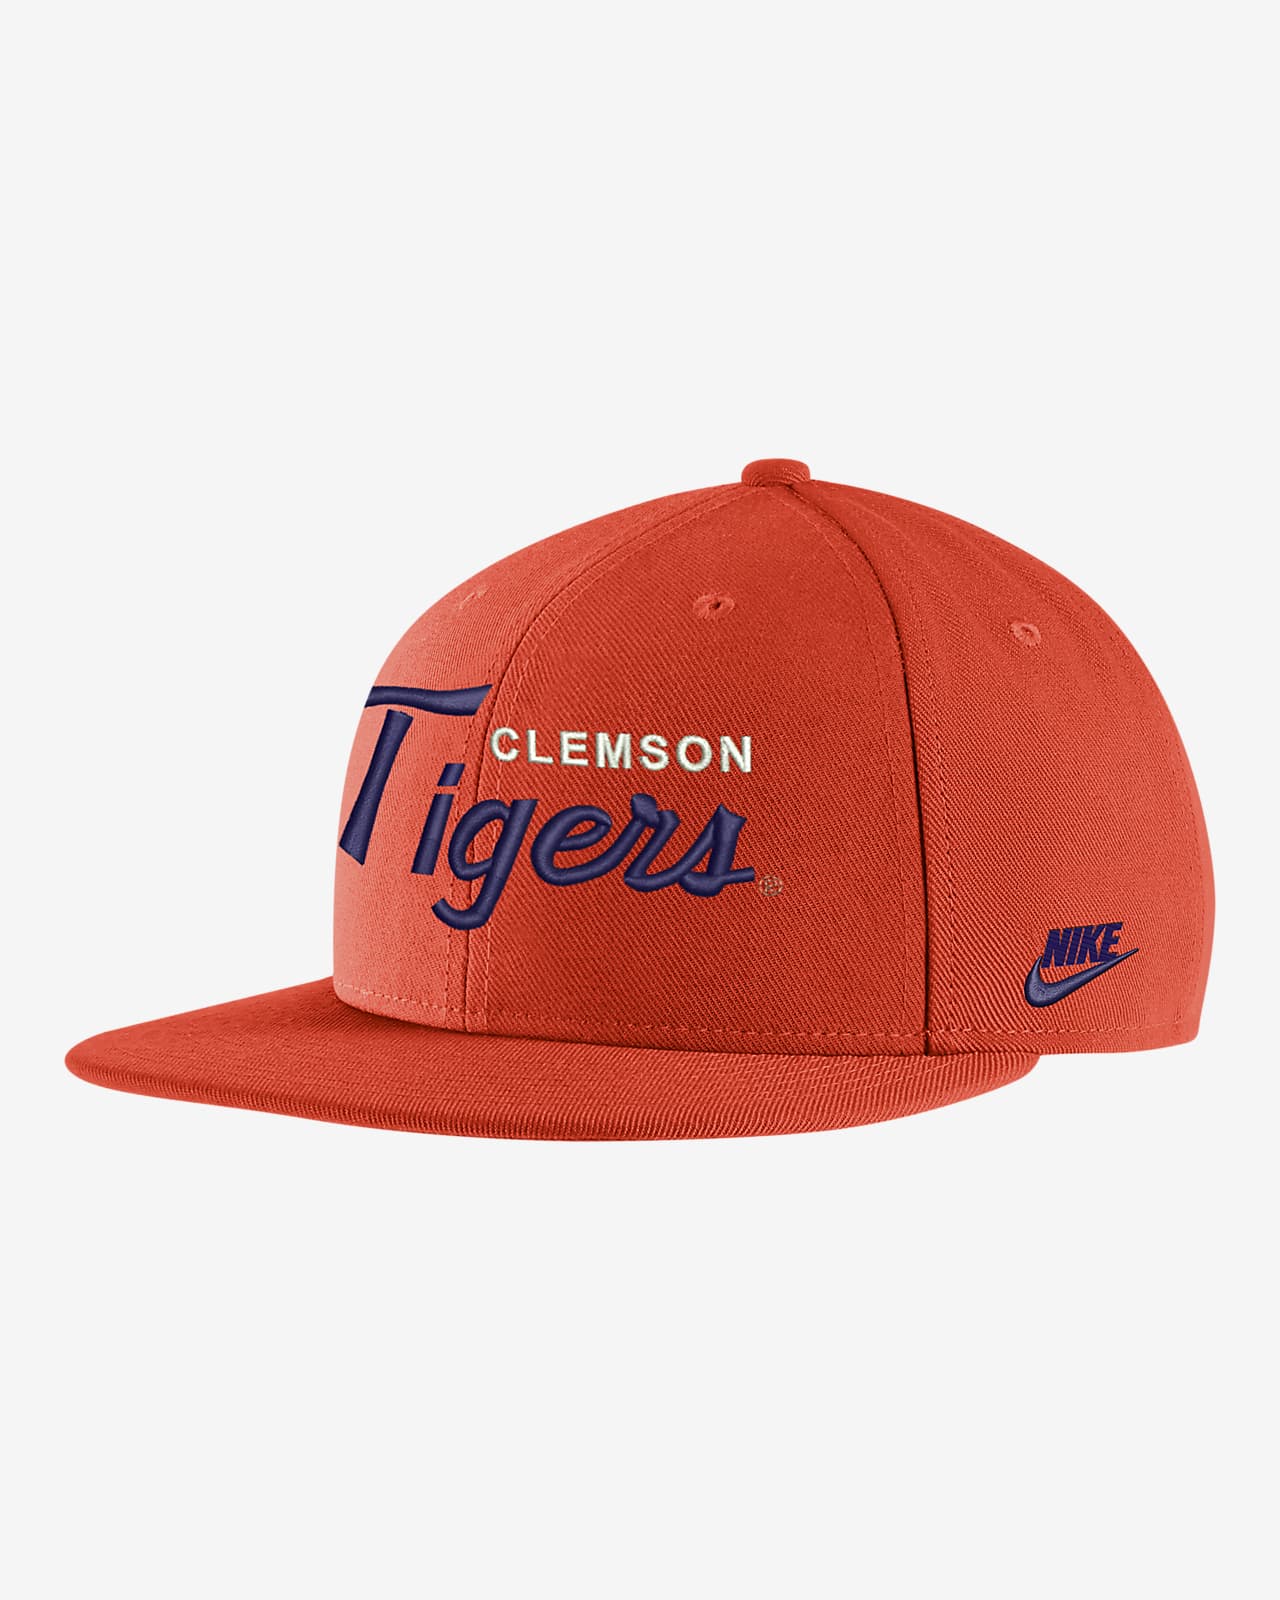 Clemson Nike College Cap